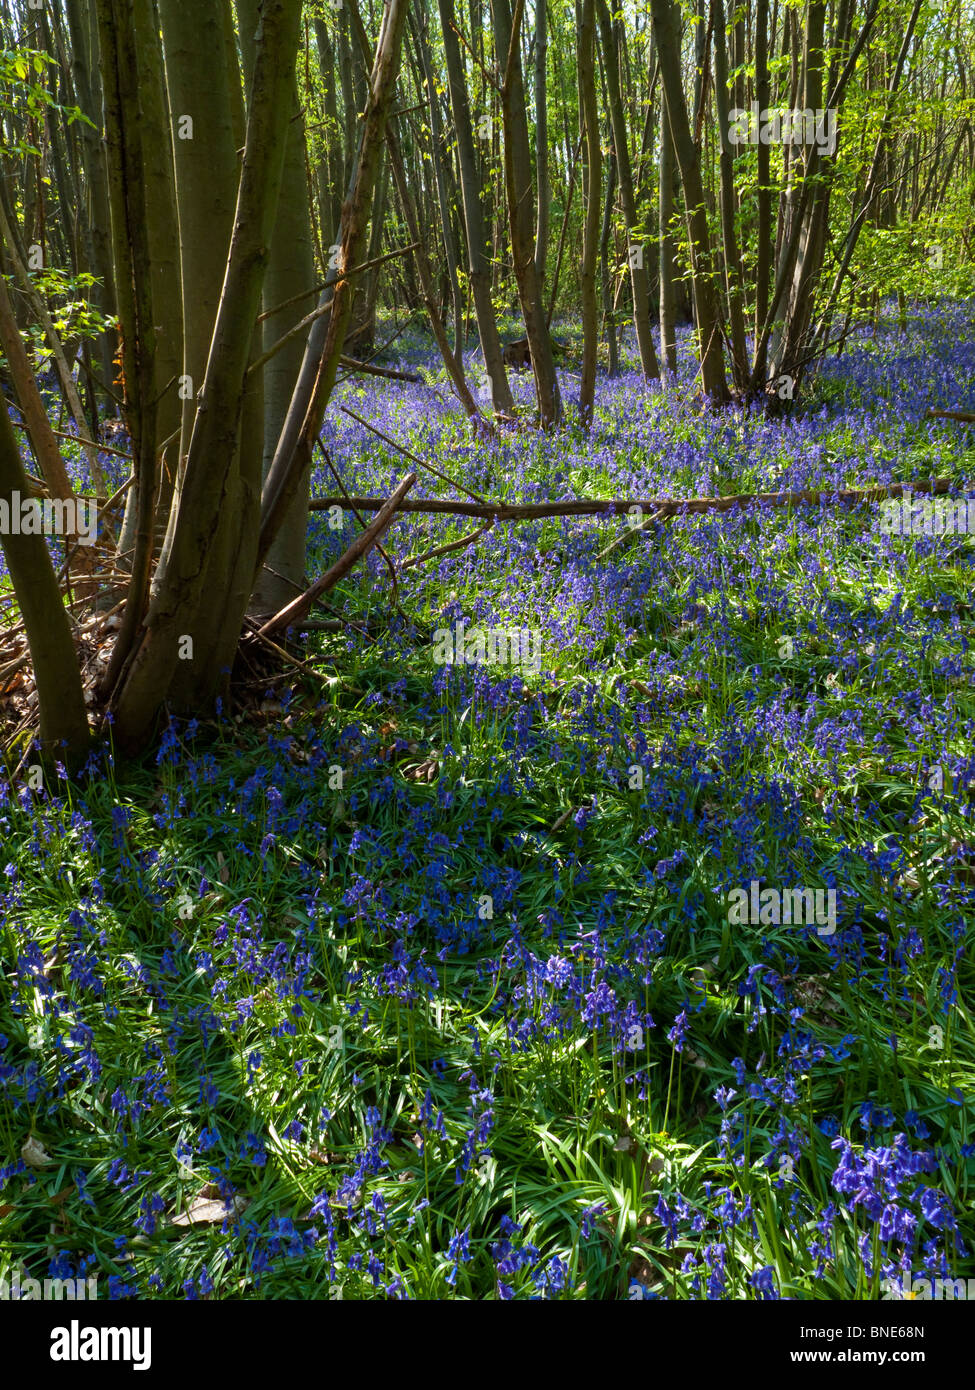 Bluebell comune nei boschi, Hyacinthoides non scripta è una primavera-fioritura bulbosa pianta perenne Foto Stock